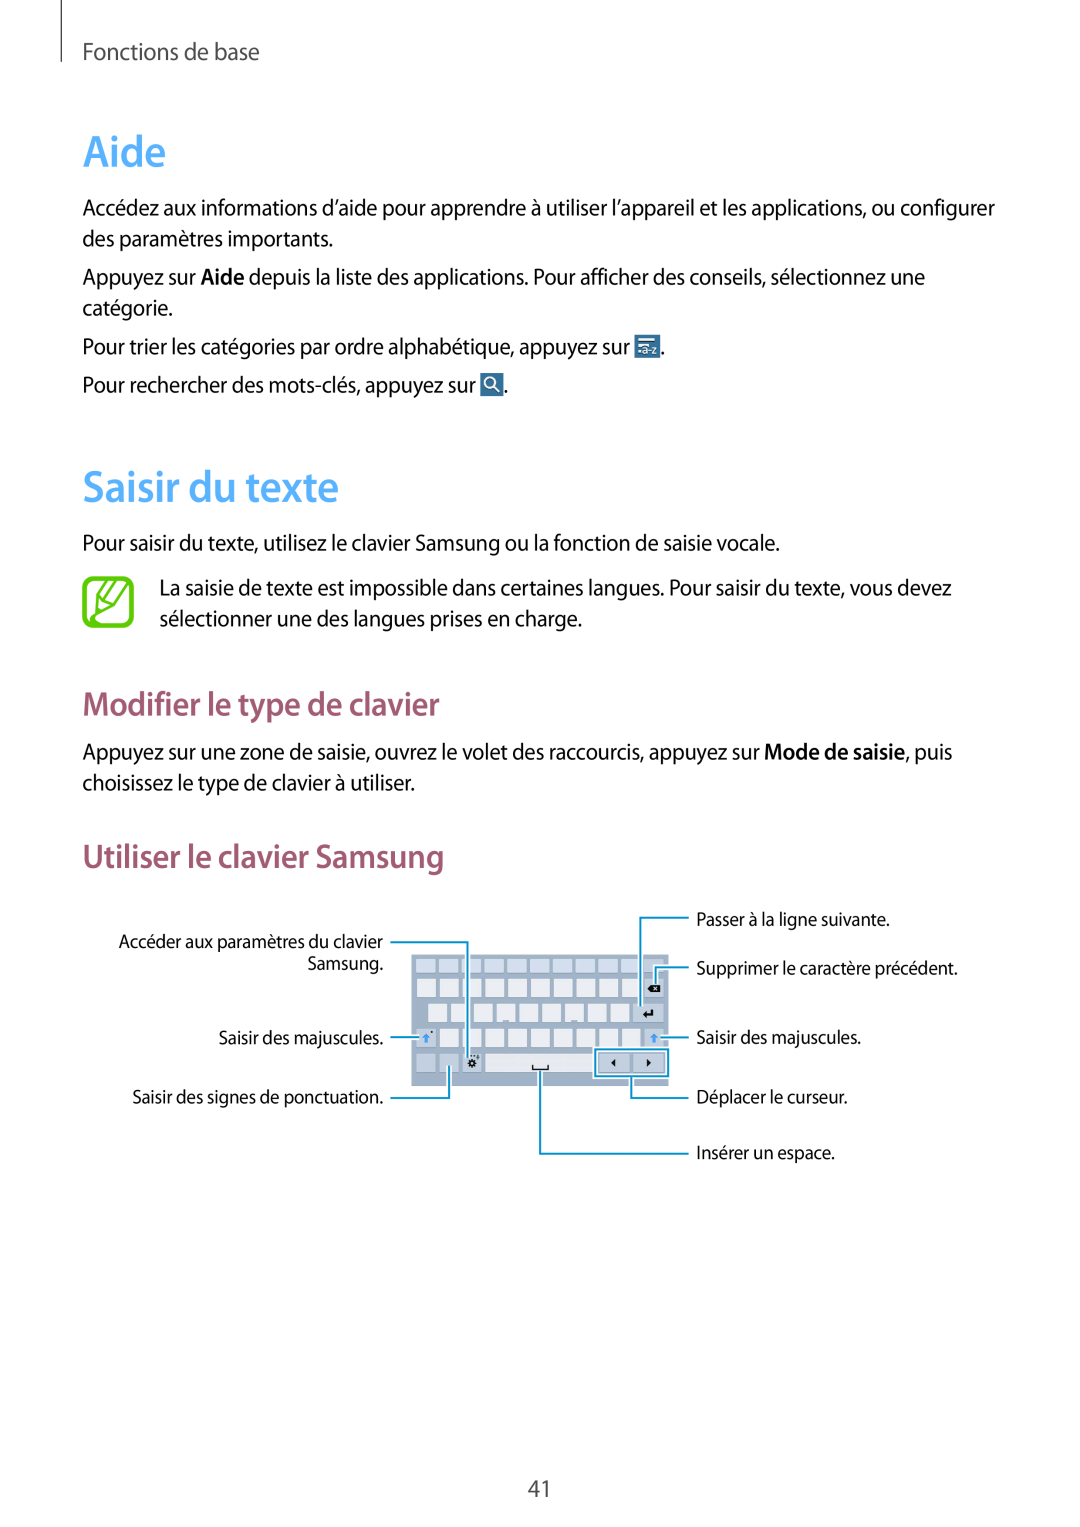 Samsung SM-T320NZWAXEF Aide, Saisir du texte, Modifier le type de clavier, Utiliser le clavier Samsung, Fonctions de base 